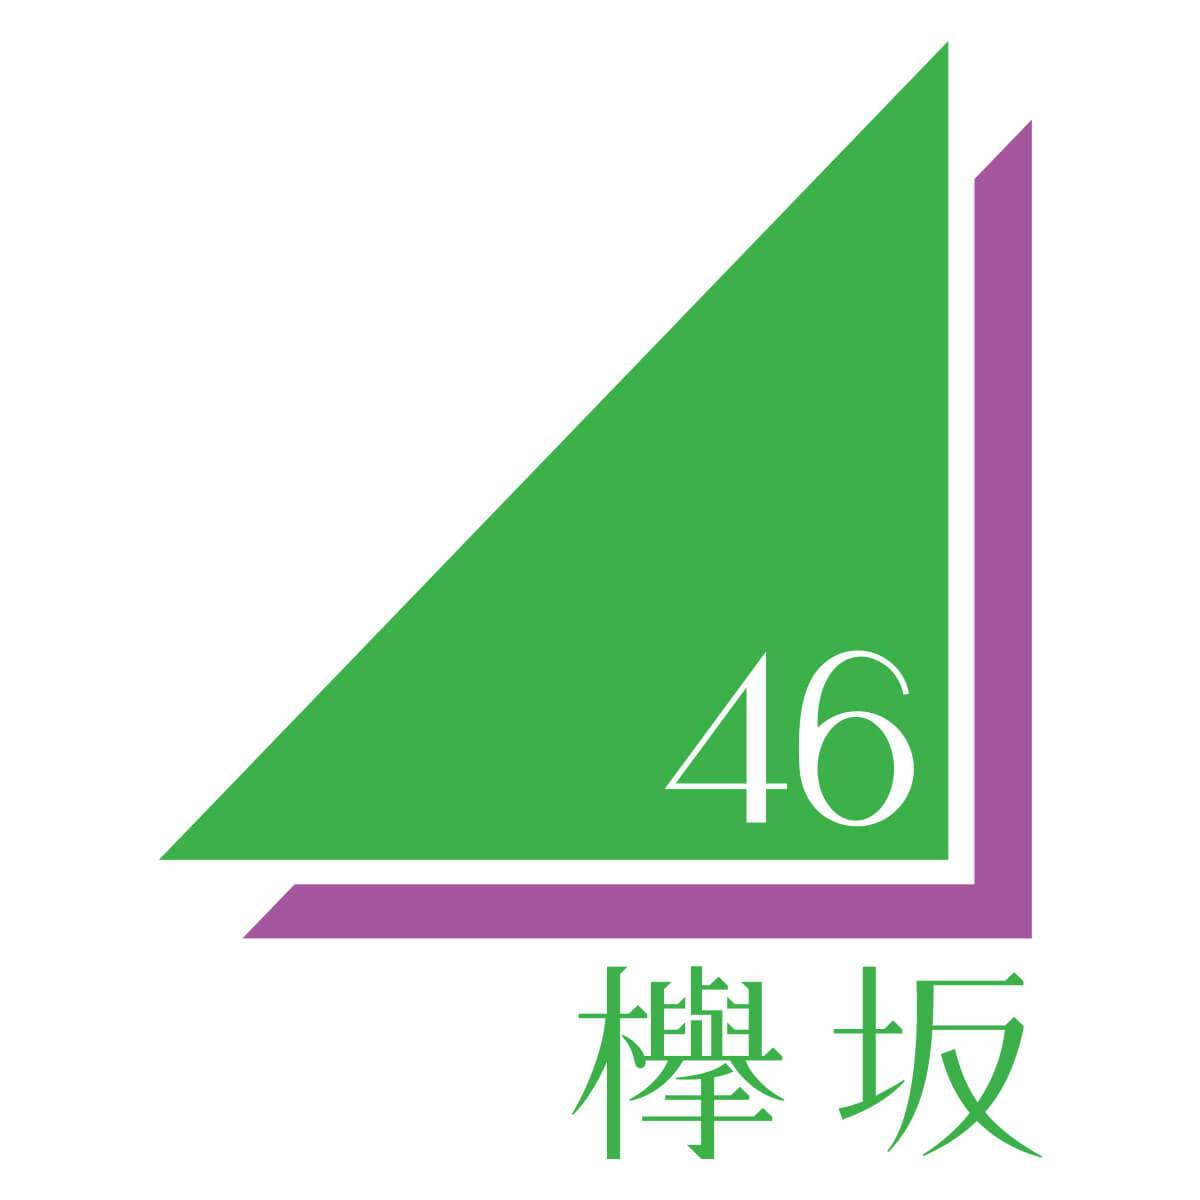 まとめサイト 欅坂46